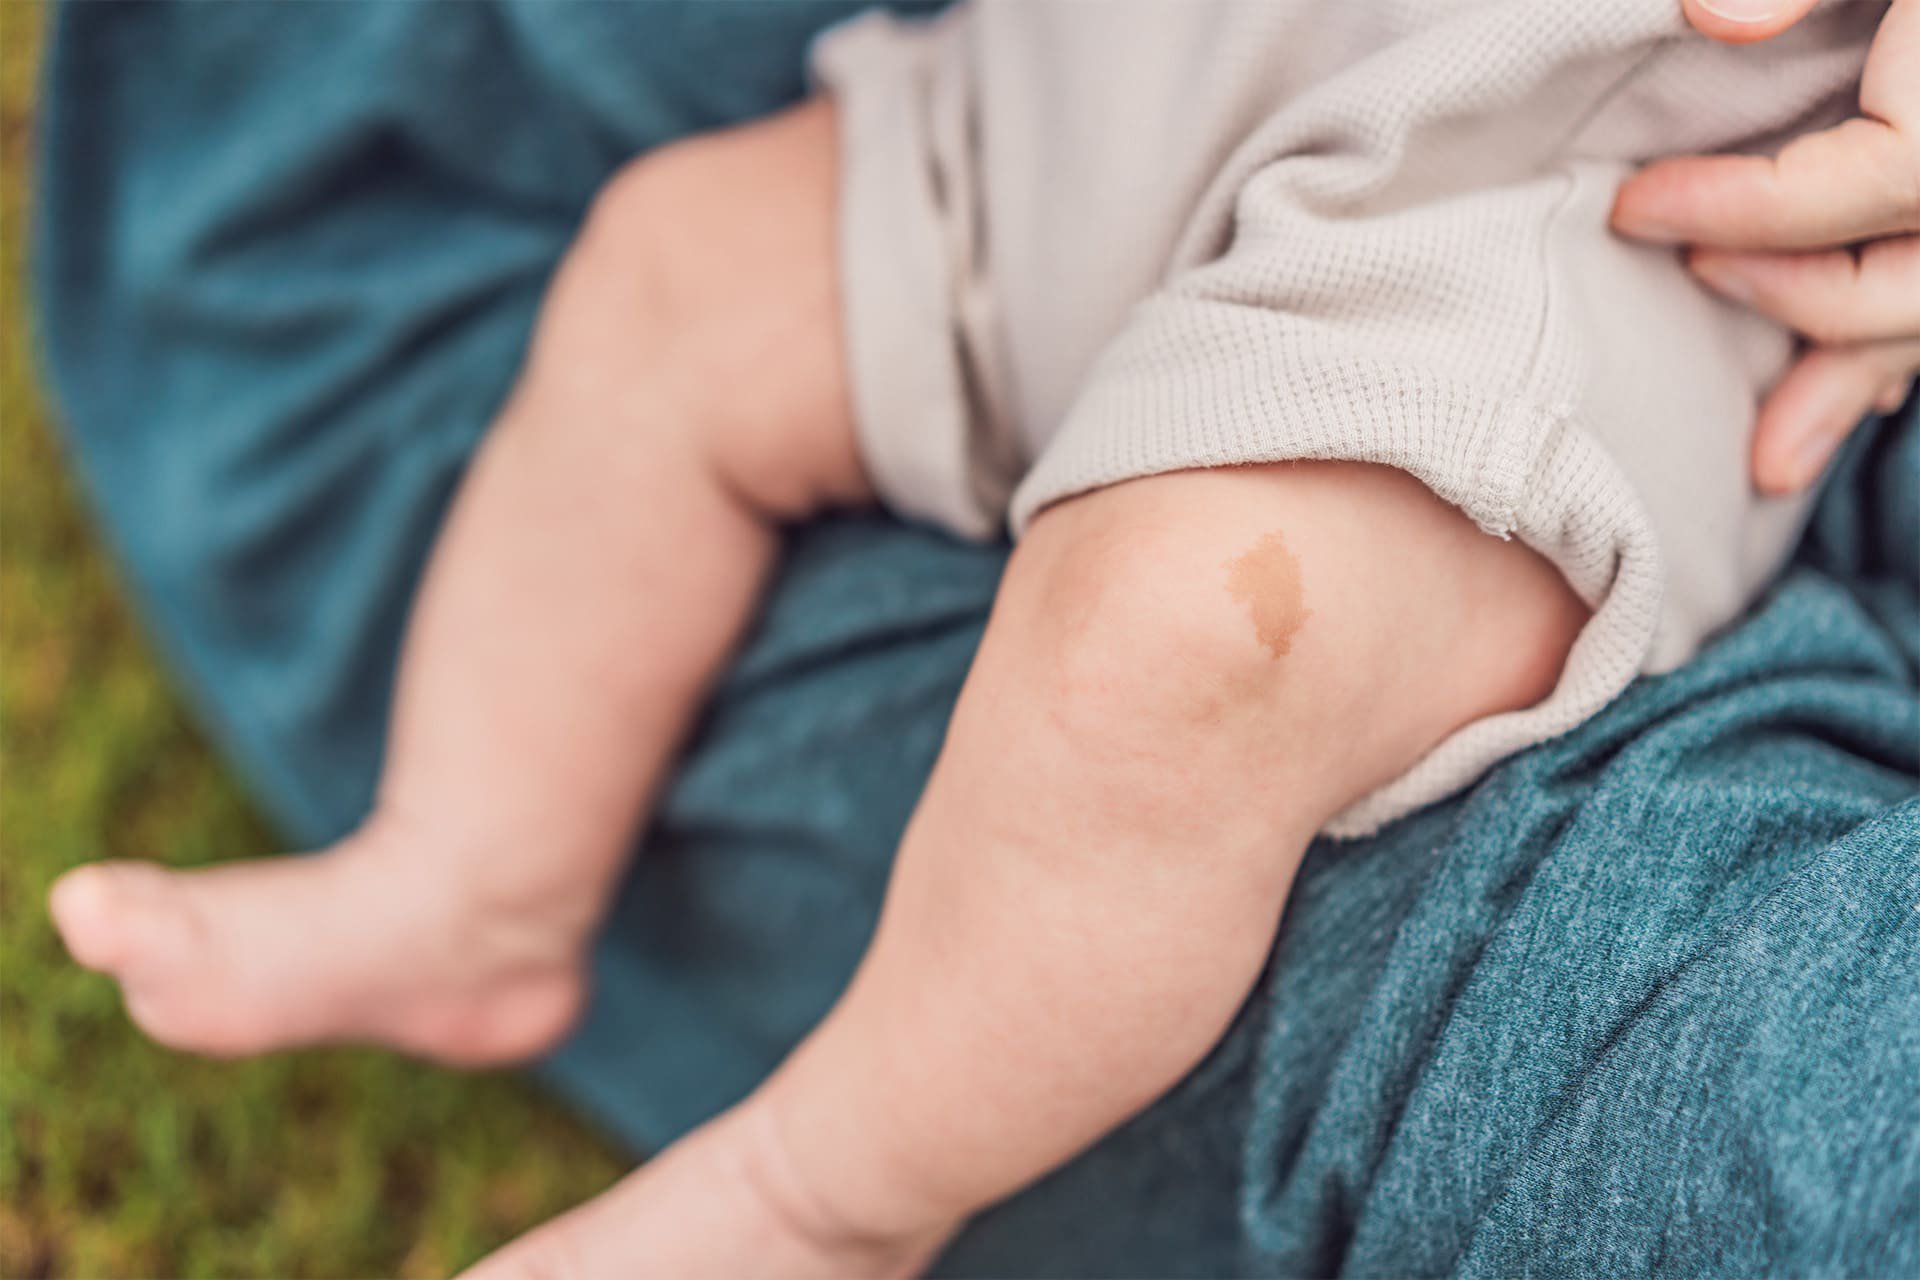 Marca de nacimiento en la pierna de un bebé.